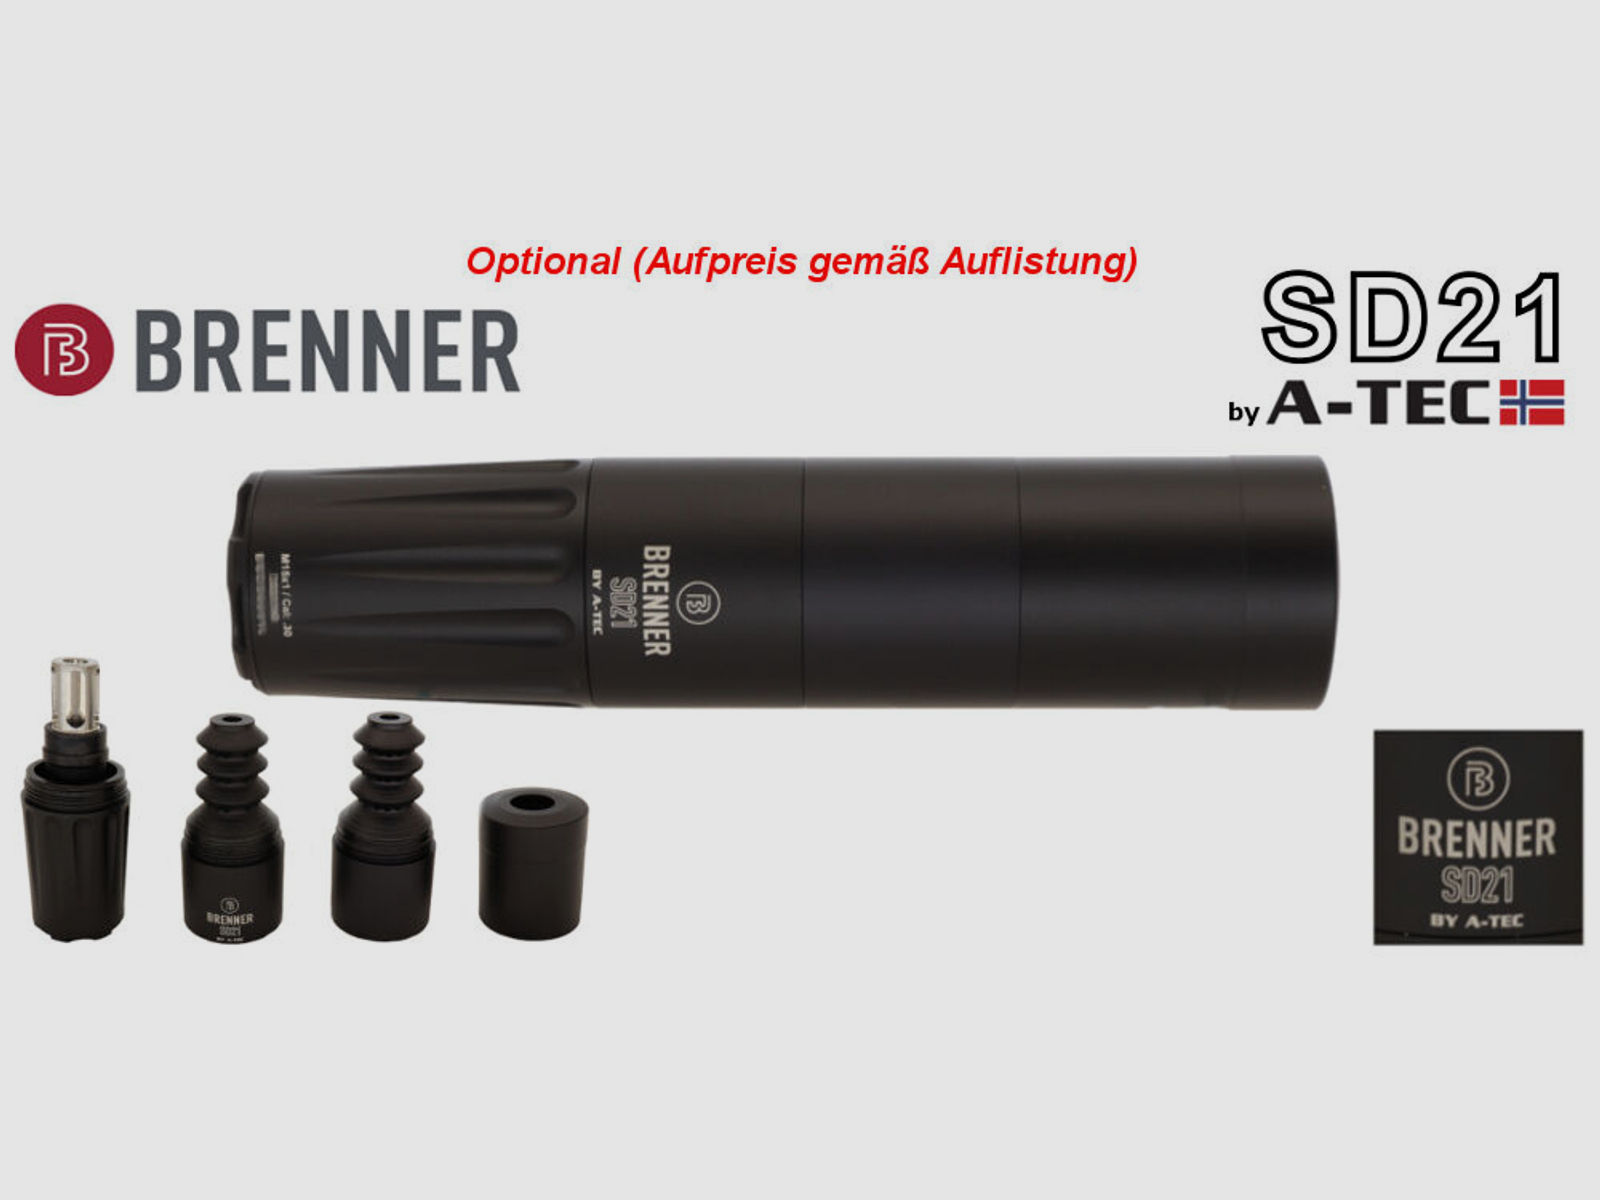 Brenner Komplettpaket:	 BR20 B&H Prohunter Flex Lochschaft mit Zeiss V6 2.5-15x56 fertig montiert